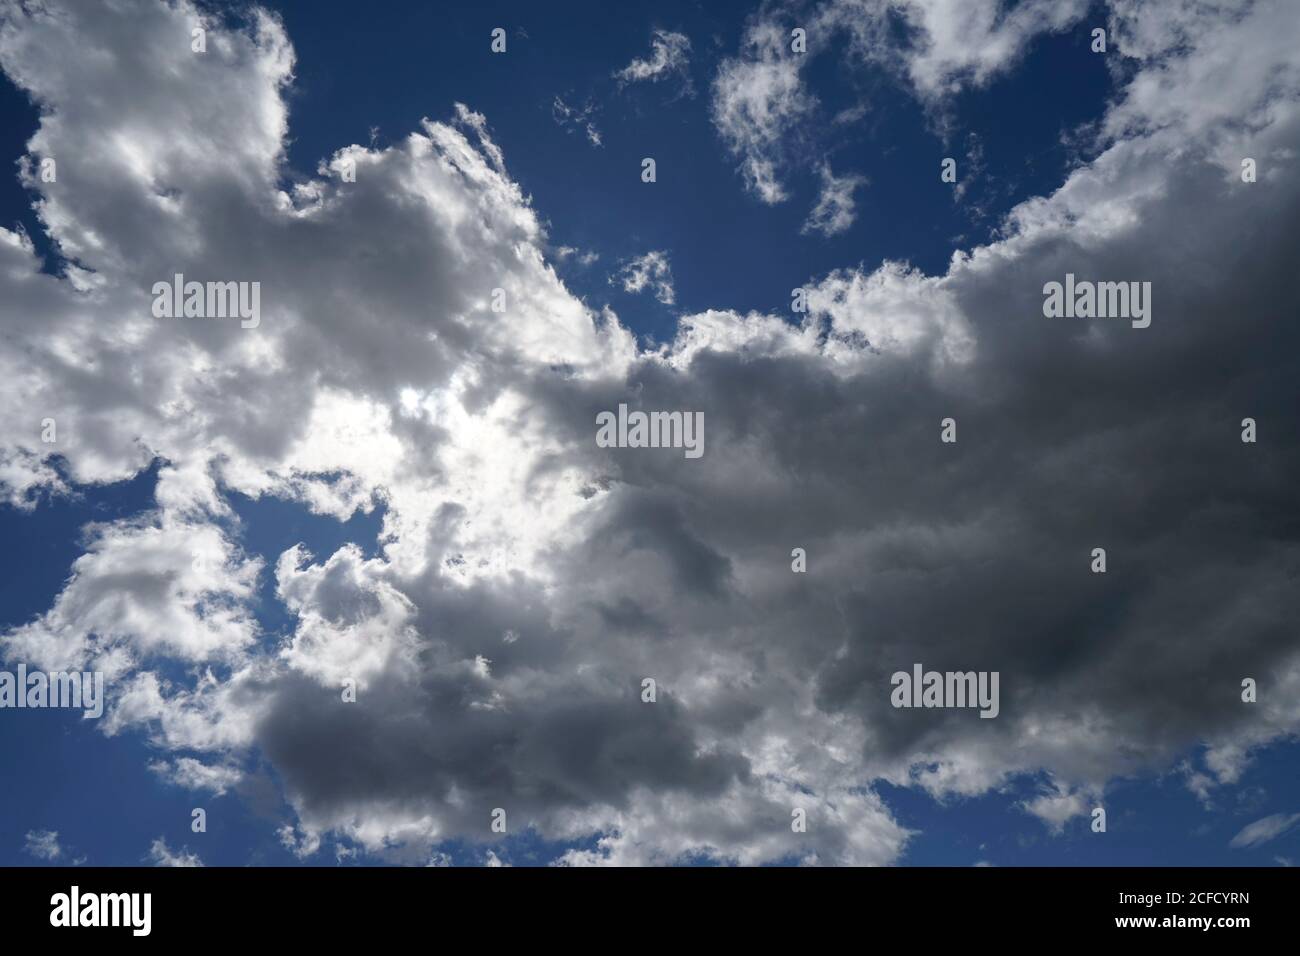 Deutschland, Bayern, Oberbayern, Altötting, Wolkenformation, Sonne hinter Regenwolken, Nimbostratus, blauer Himmel Stockfoto